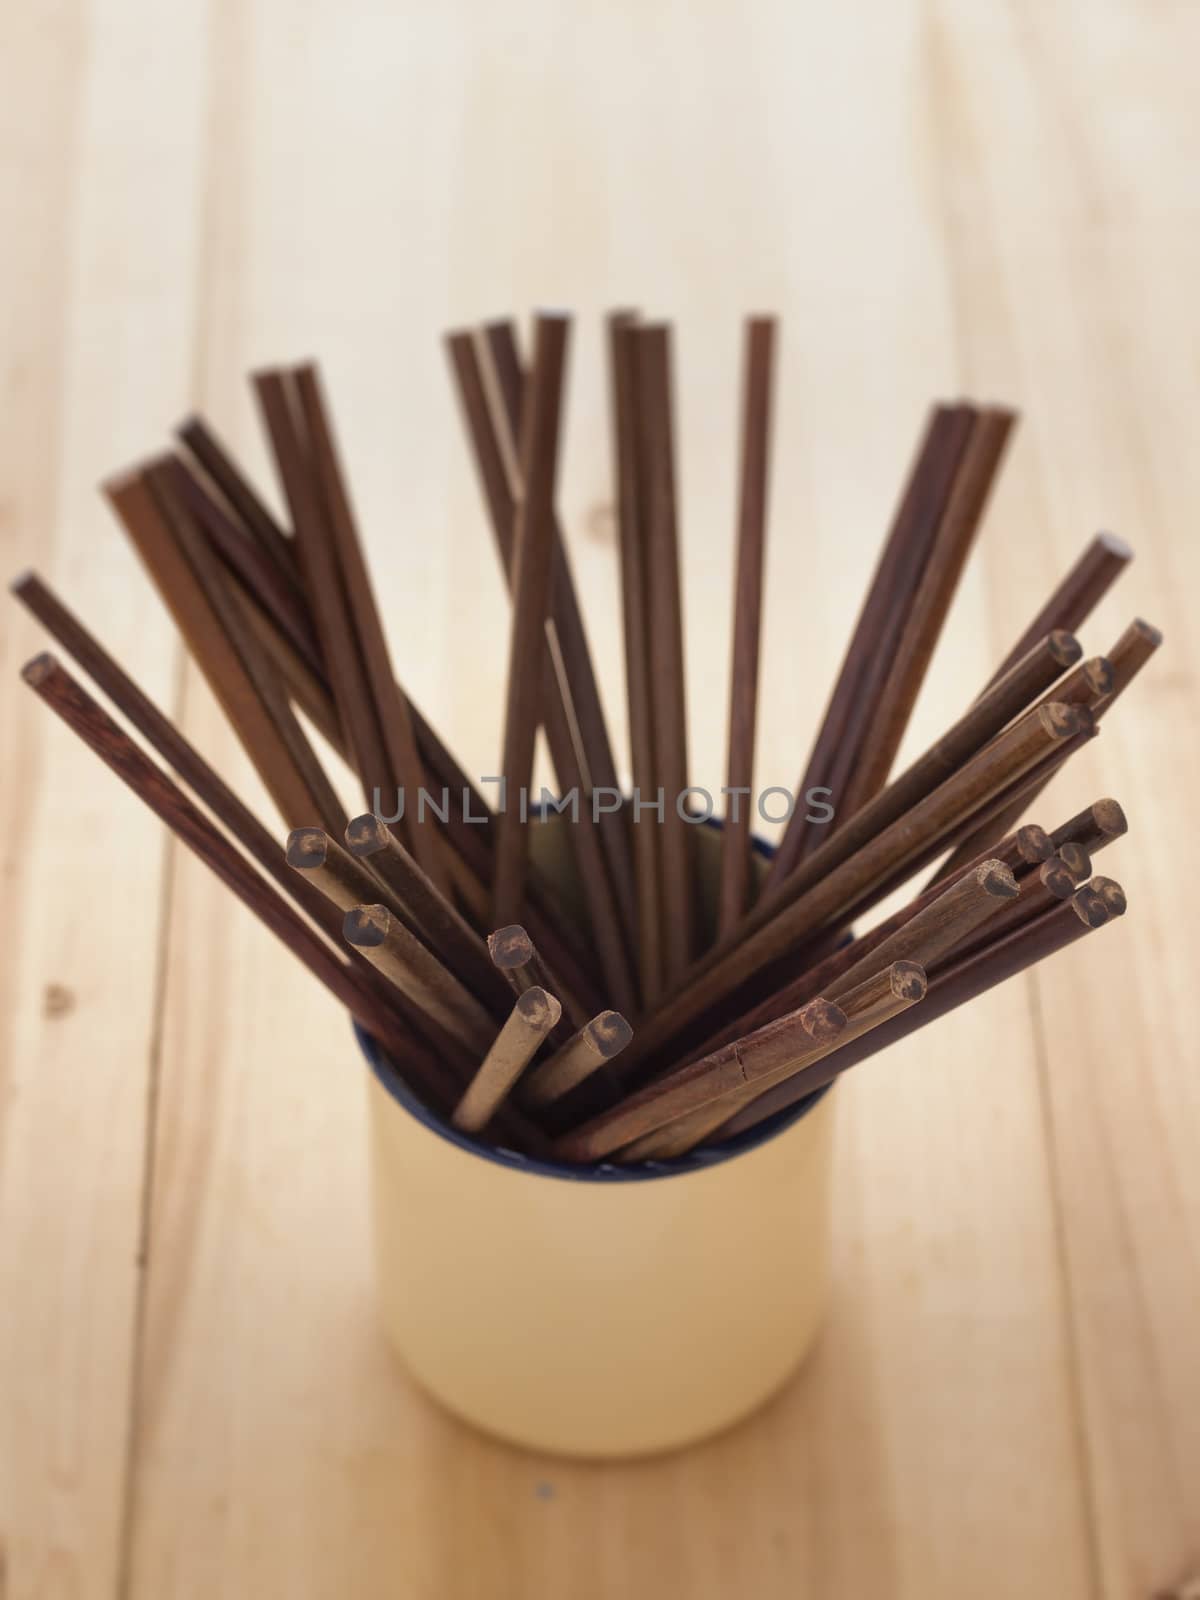 close up of wooden chopsticks